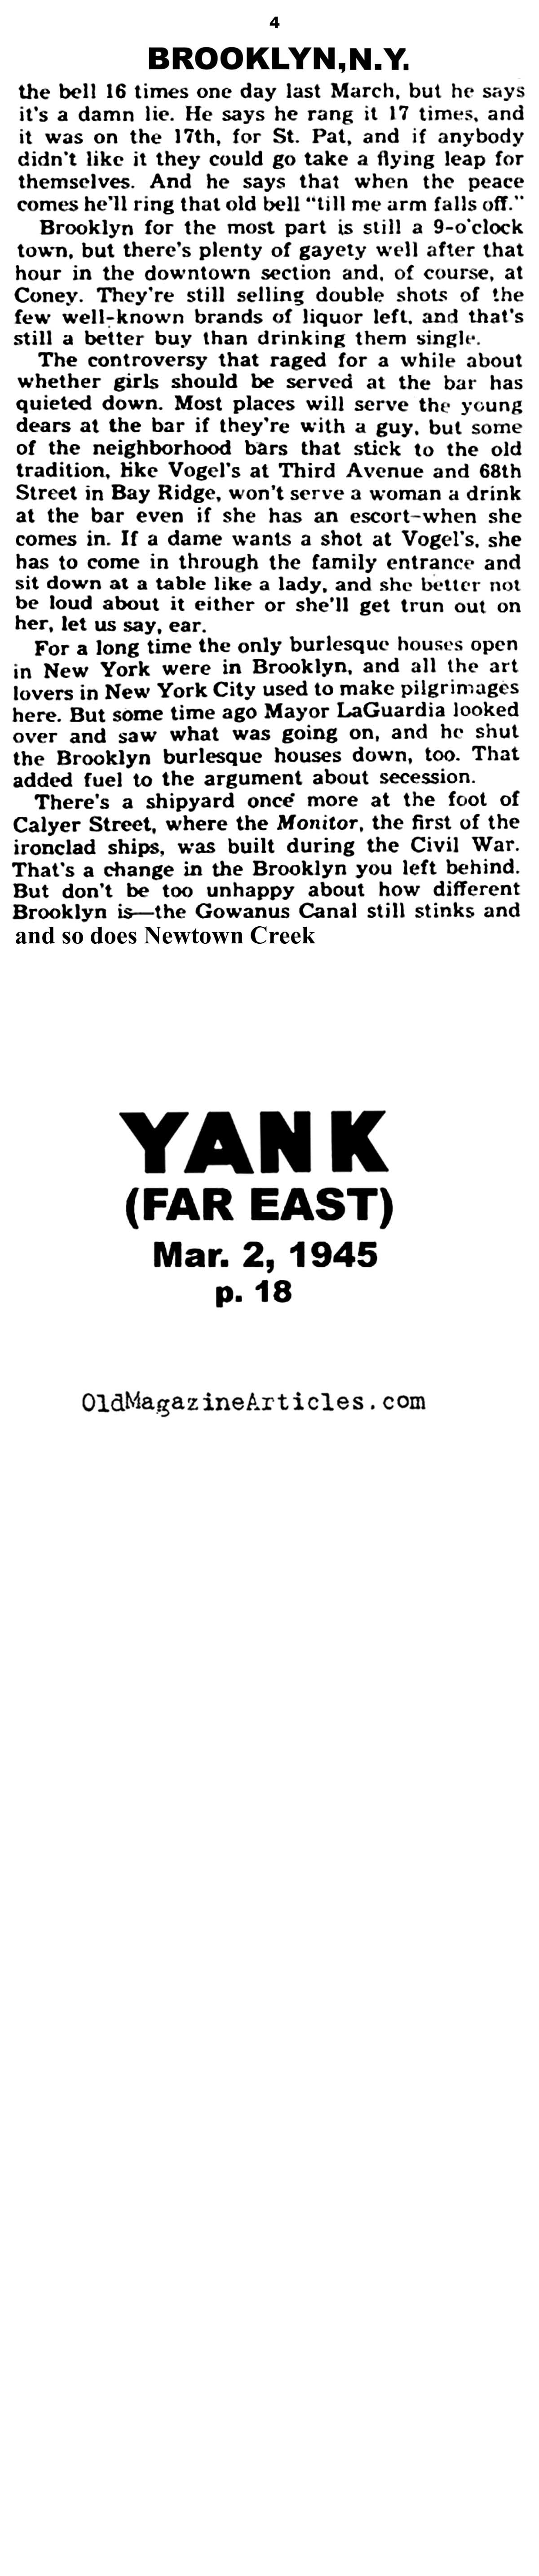 Wartime Brooklyn (Yank Magazine, 1945)